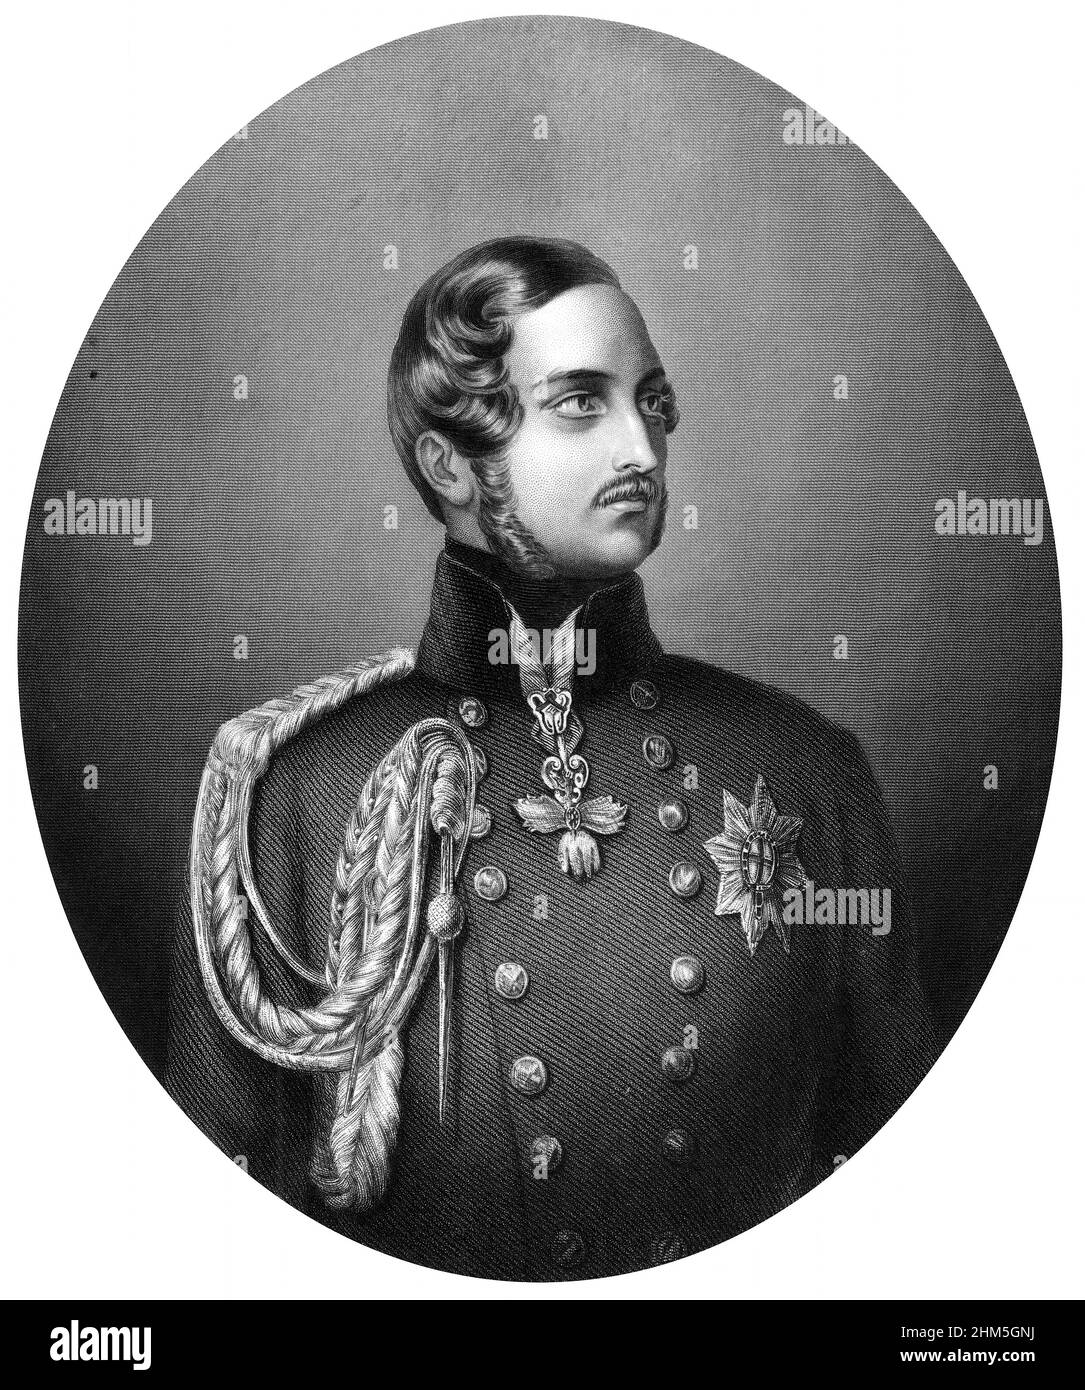 Porträt des Prinzen Albert (1819-1861) - Gravieren, 19th. Jahrhundert Stockfoto